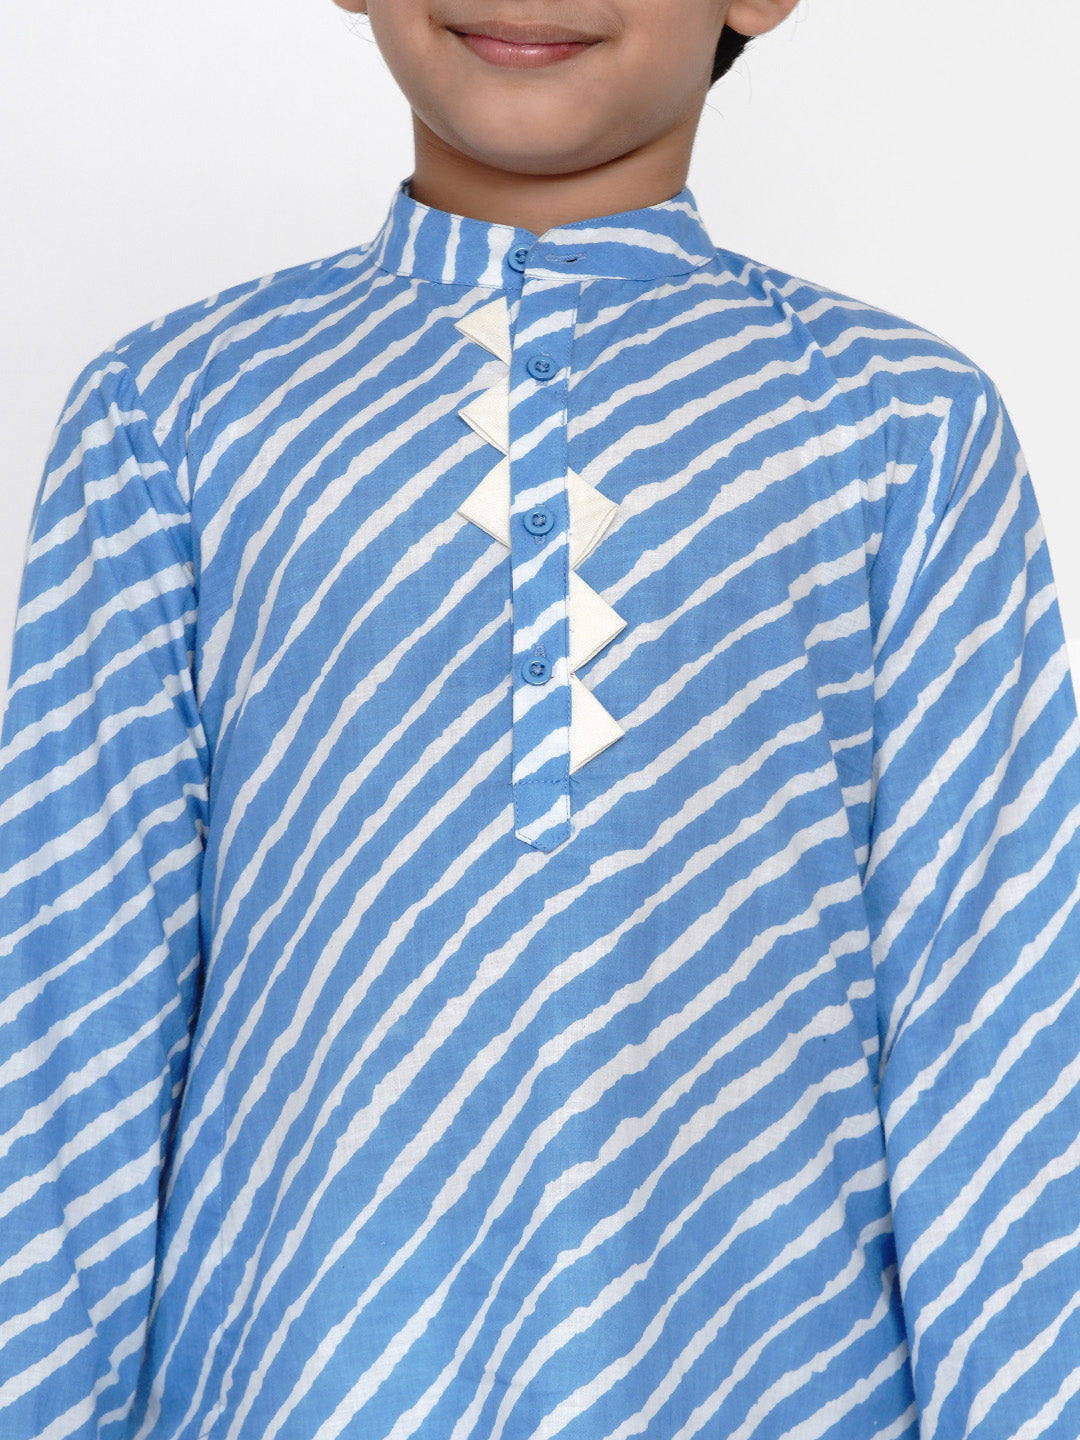 Boys Blue & White Striped Kurti with Pyjamas